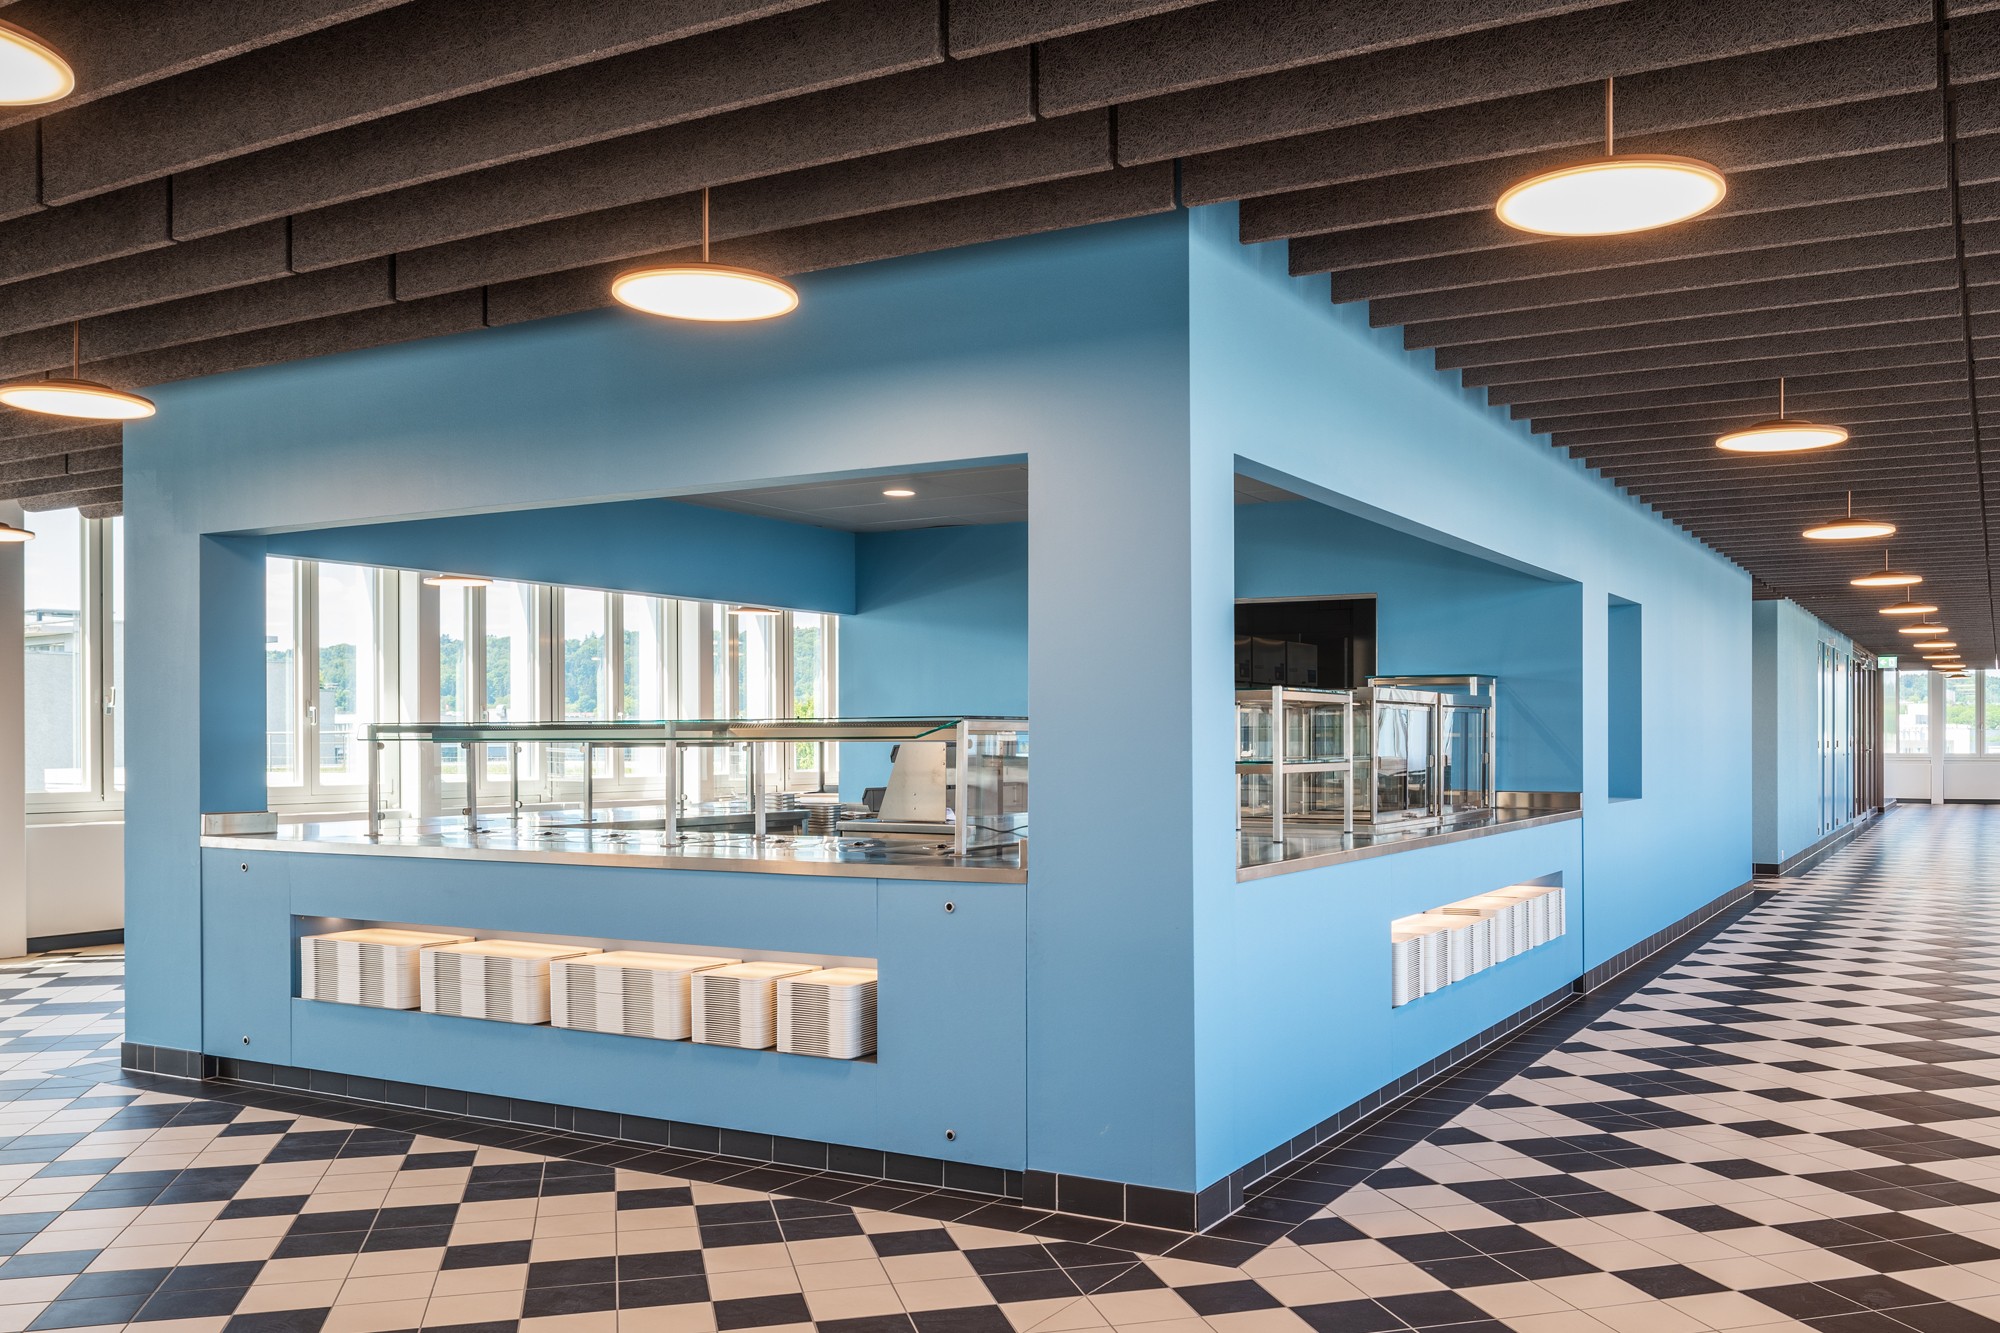 Personalcafeteria im Attikageschoss: Hier wurde der Bodenbelag, die Beleuchtung und die Akustikdecke erneuert. (© Till Forrer, Zürich)